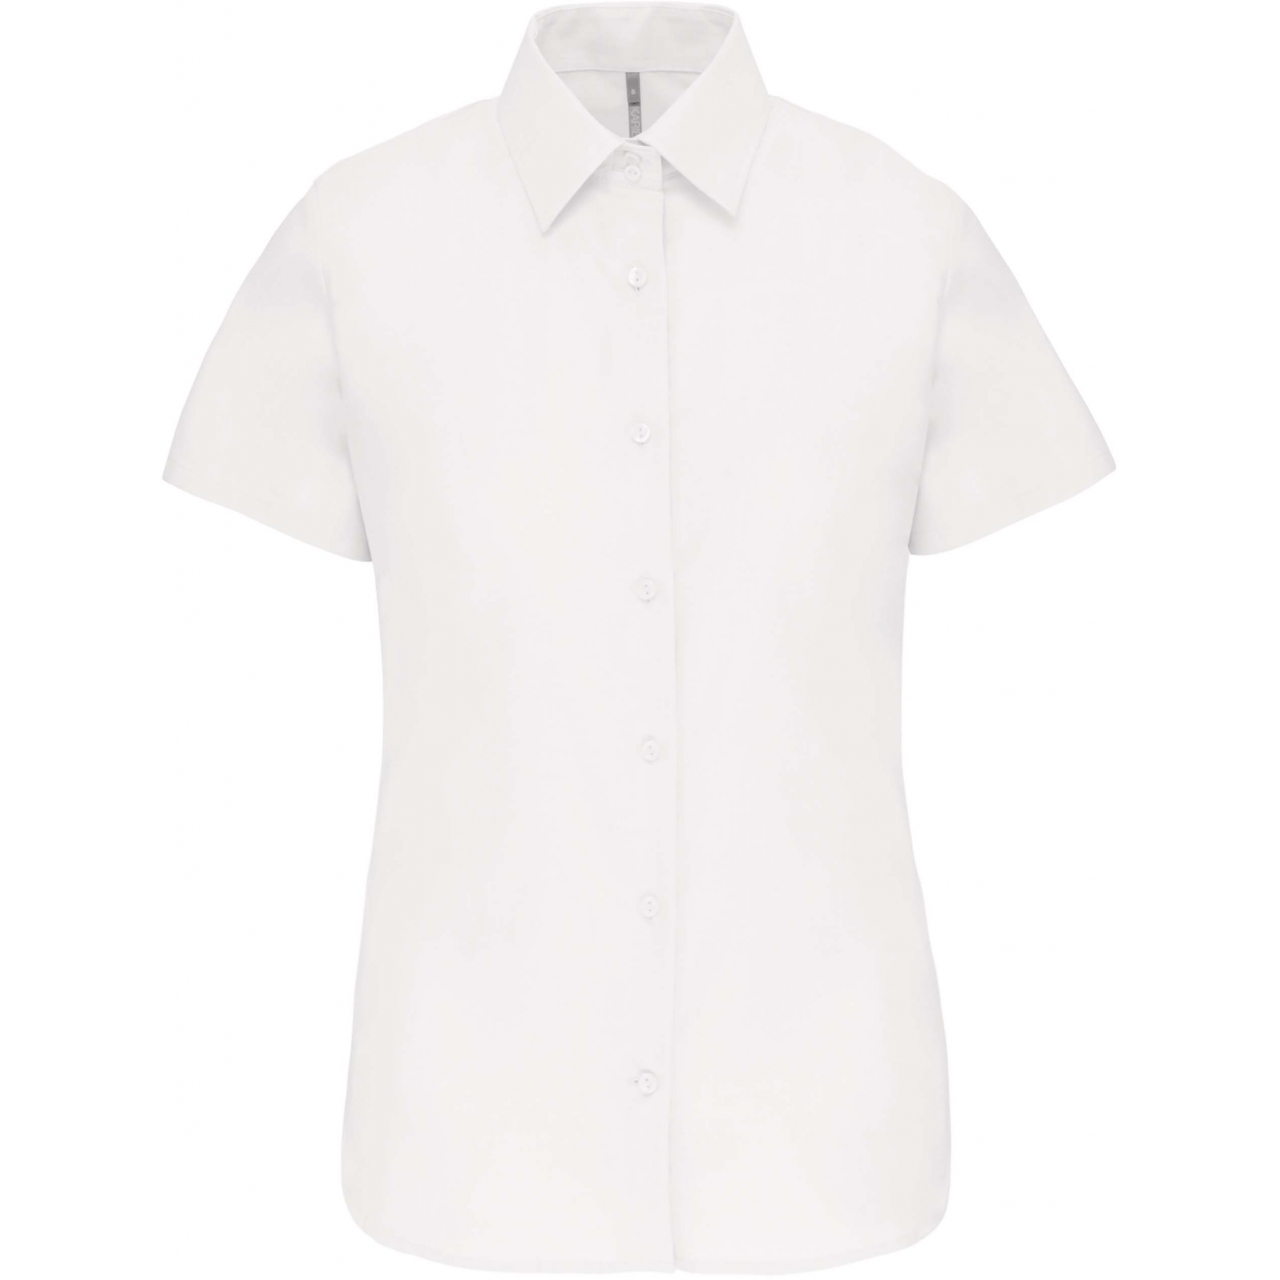 Košile dámská s krátkým rukávem Kariban Oxford - bílá, 3XL